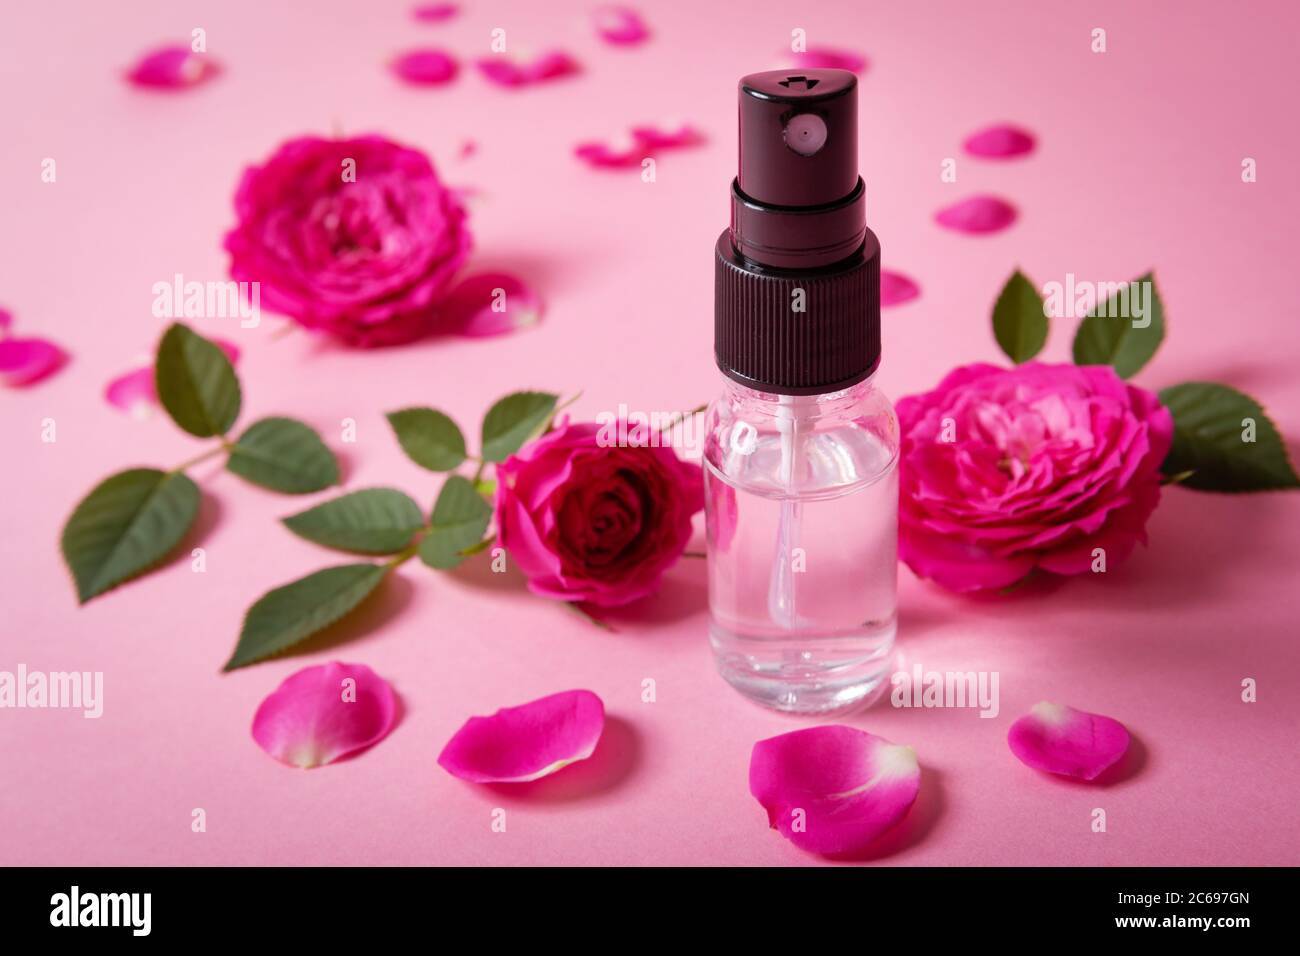 vaporisateur parfumé d'eau de rose avec fleurs fraîches roses et pétales sur fond rose Banque D'Images